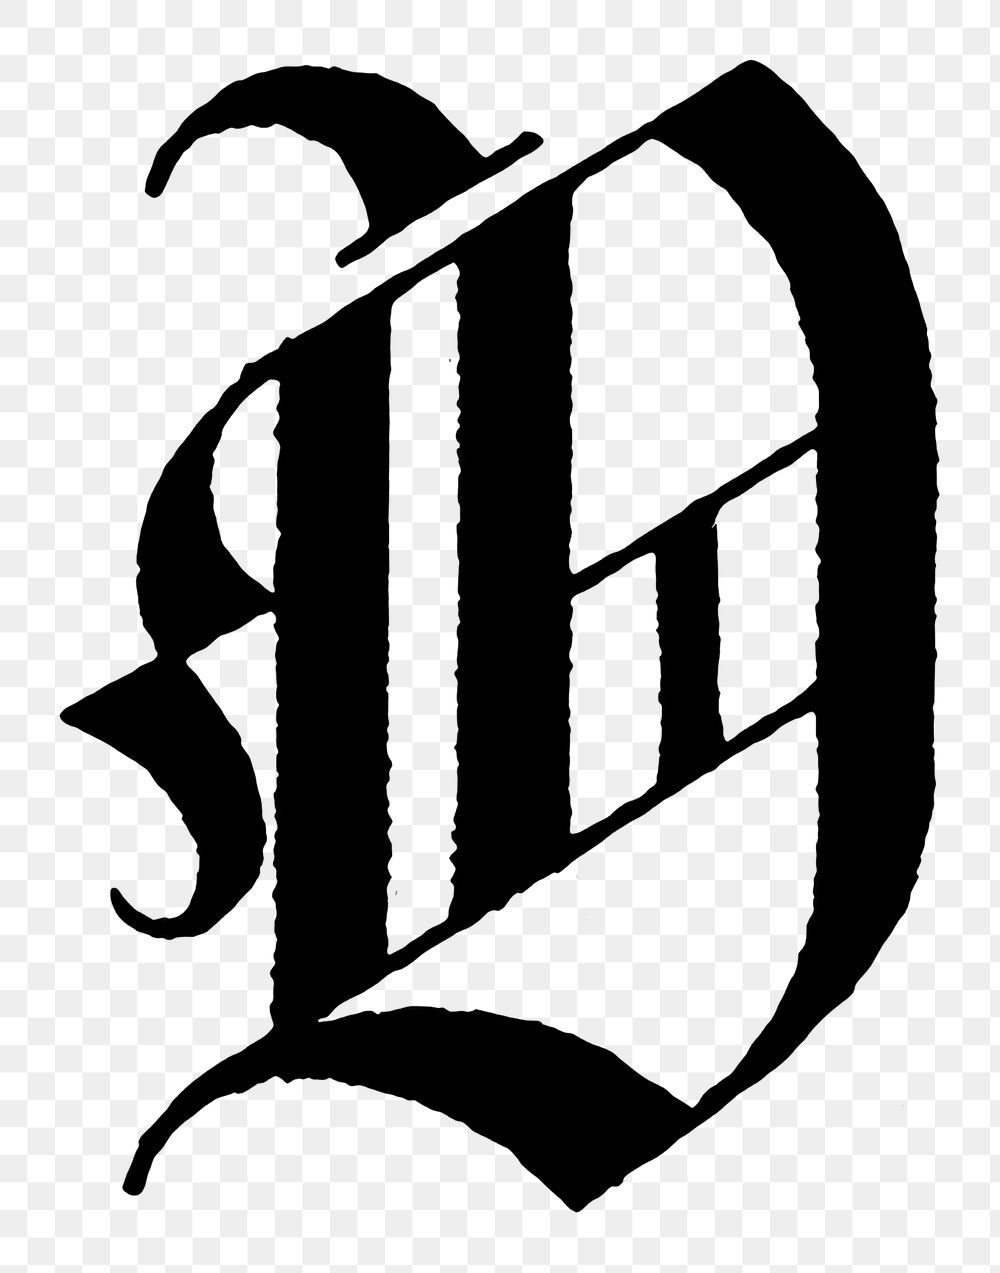 O letter PNG, German gothic font, transparent background